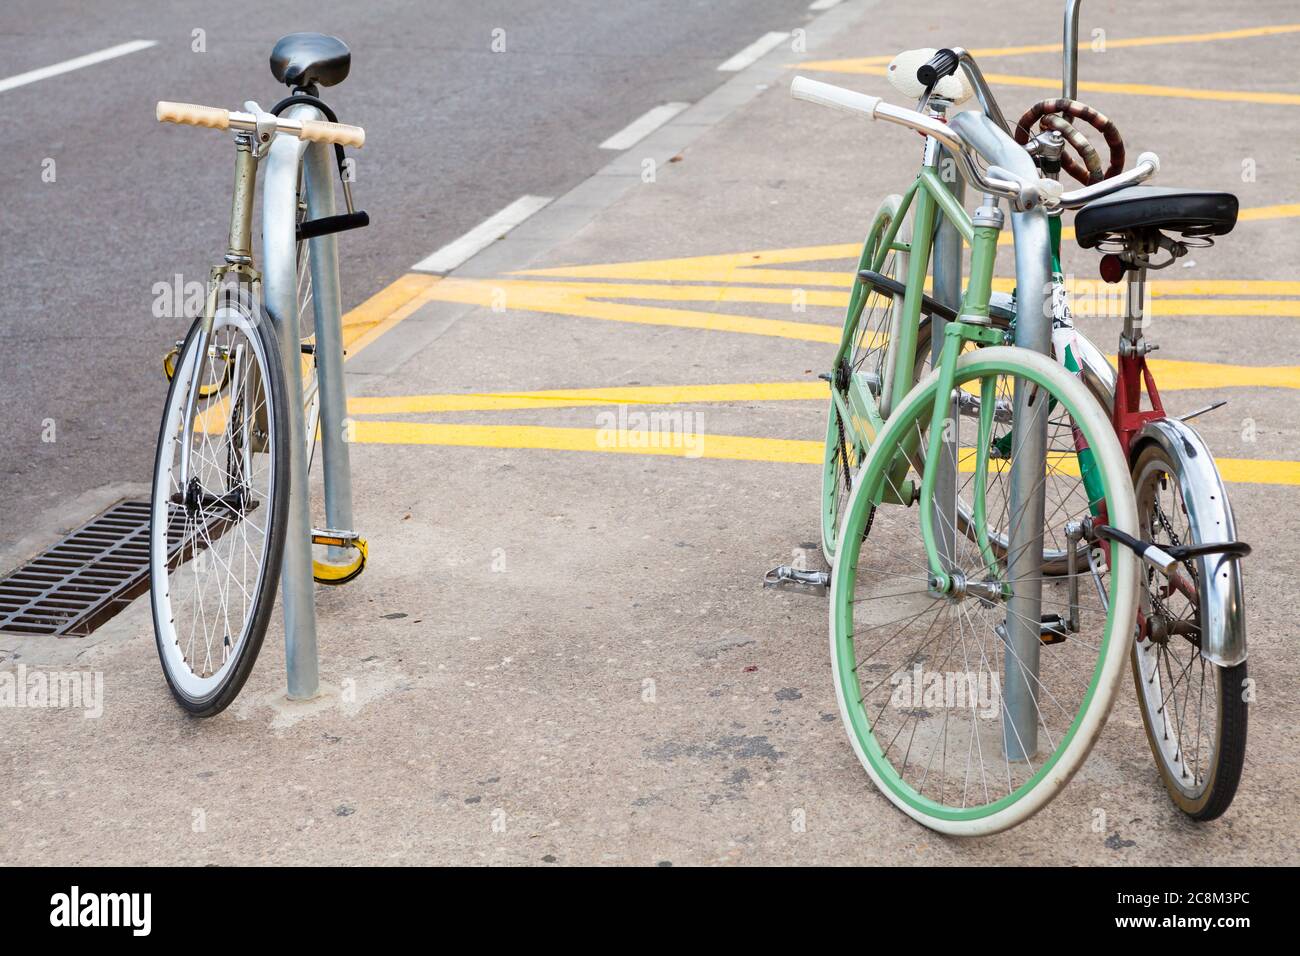 Valencia, Spagna - 07/16/2020: Biciclette a chiave sul lungomare Foto Stock